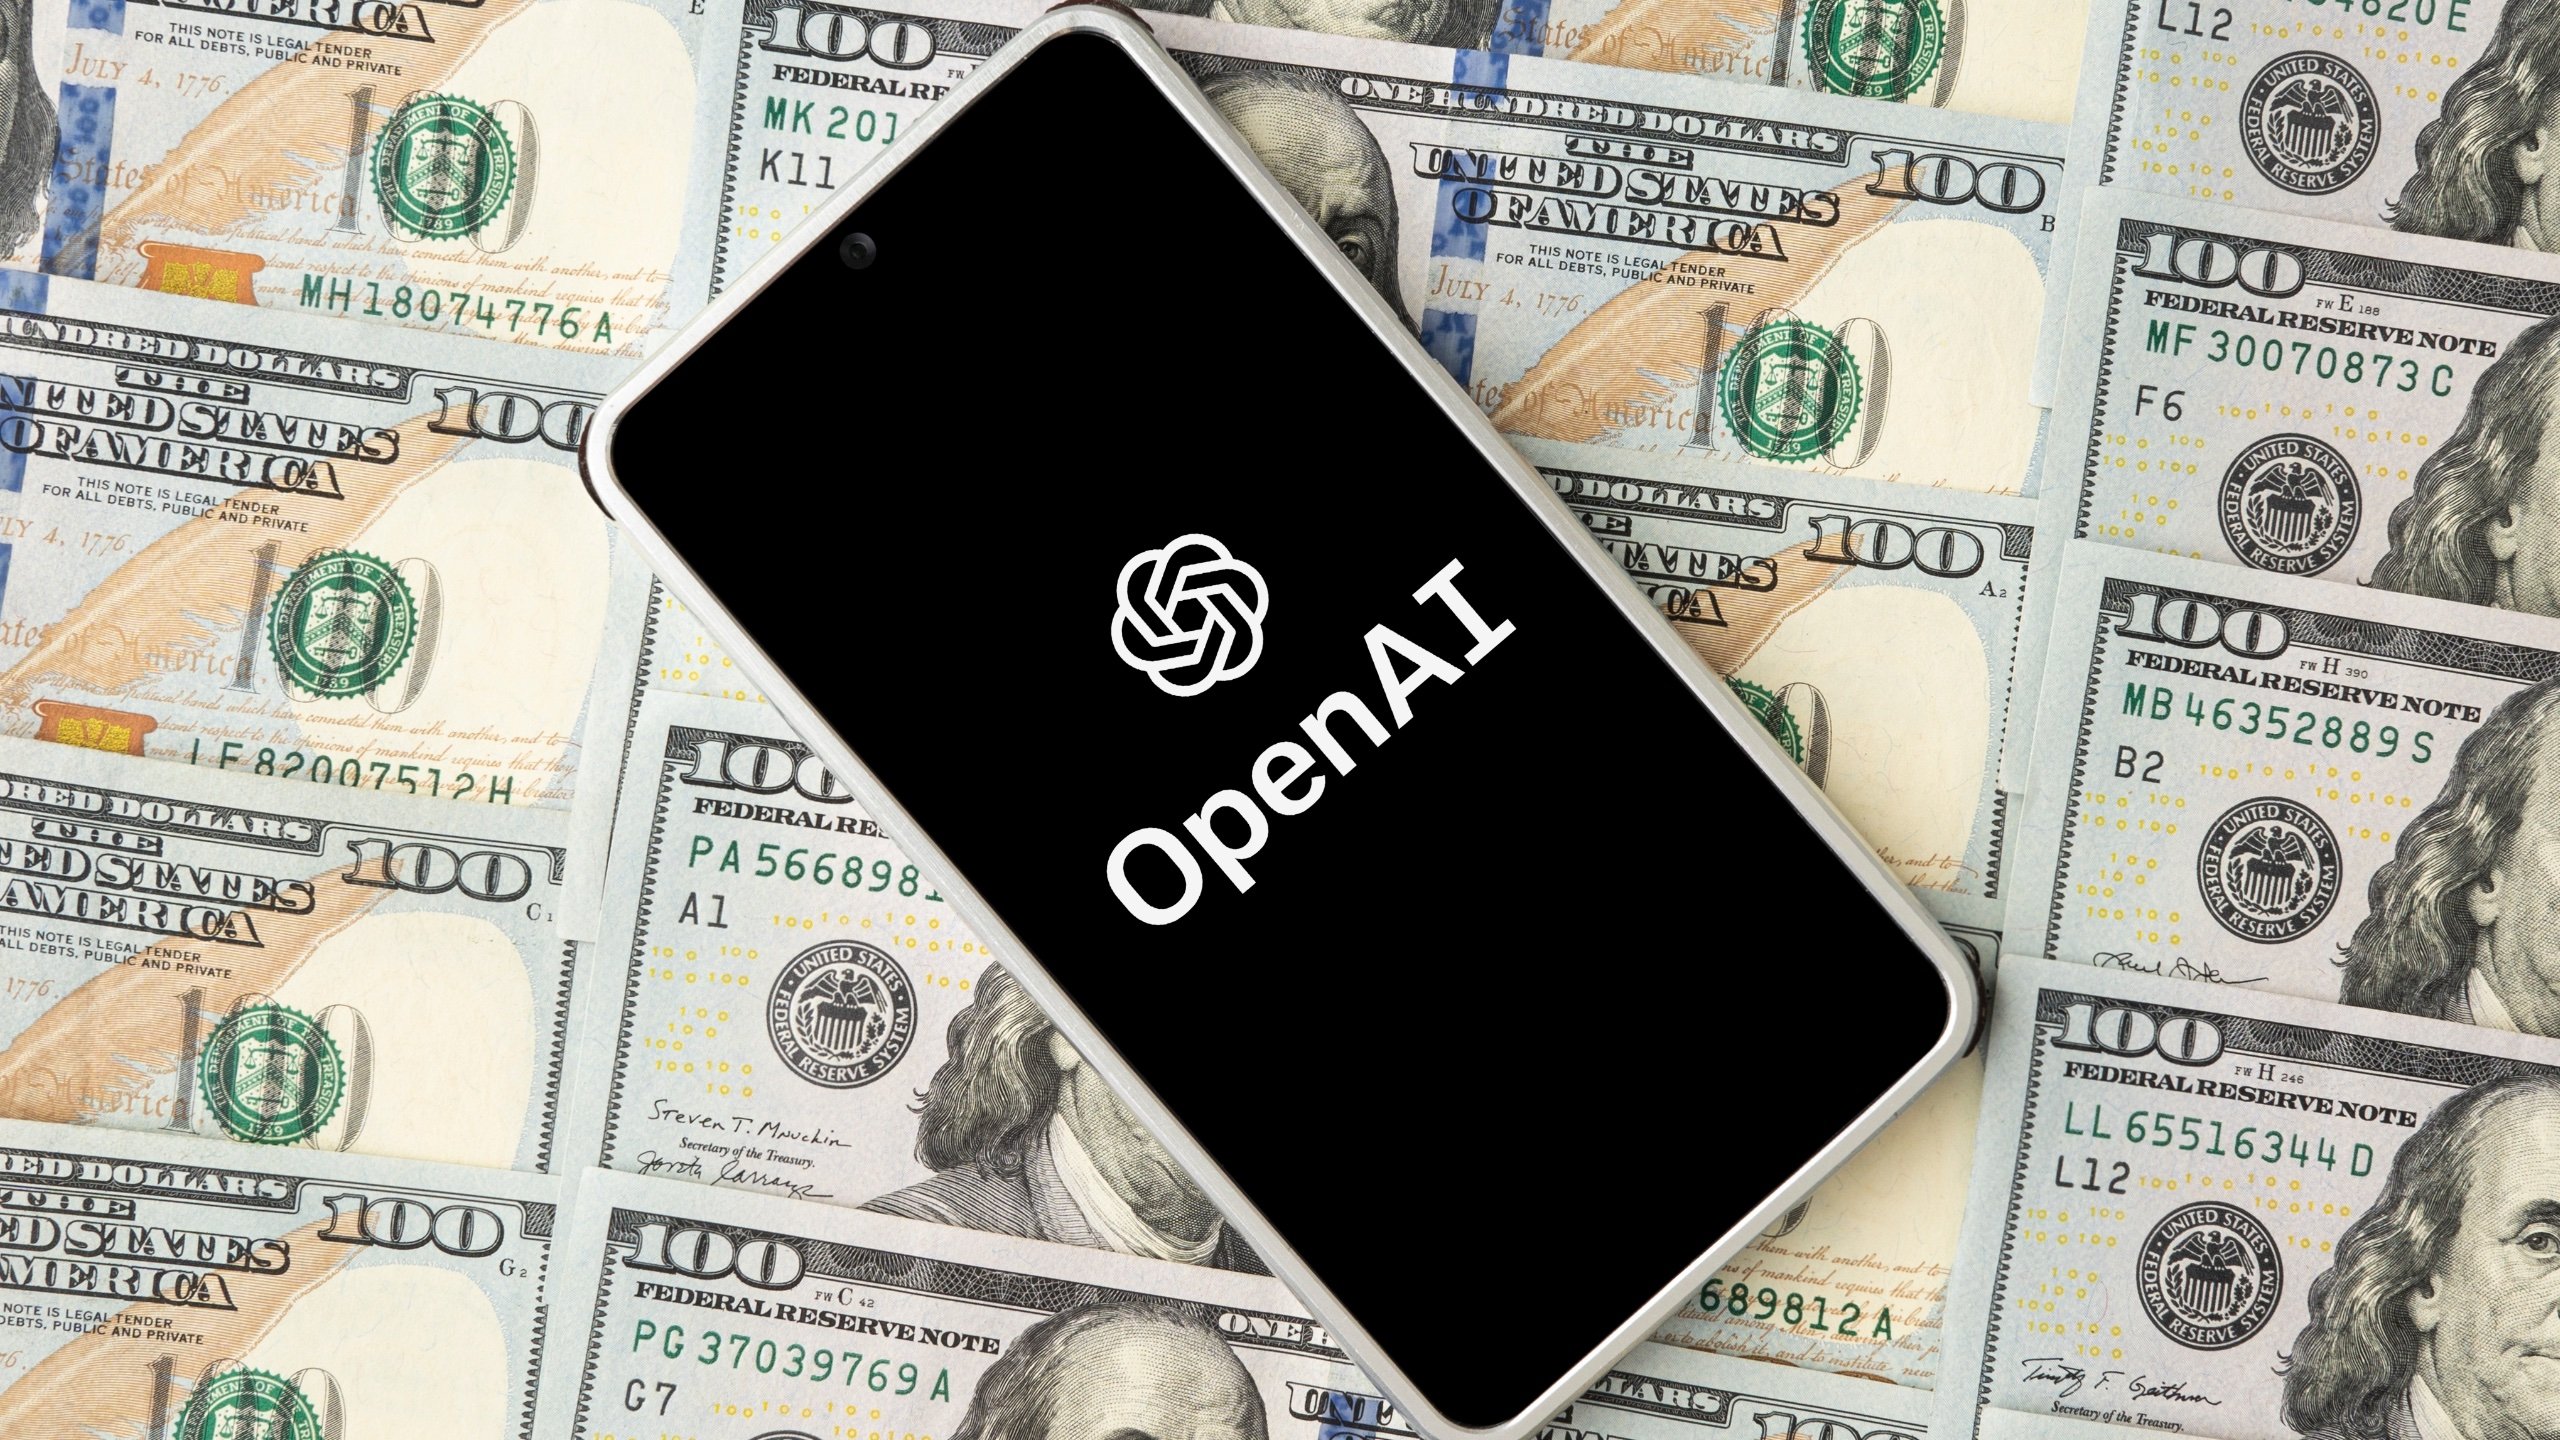 ChatGPT génère 1 milliard de dollars de revenus pour OpenAI, dépassant les projections